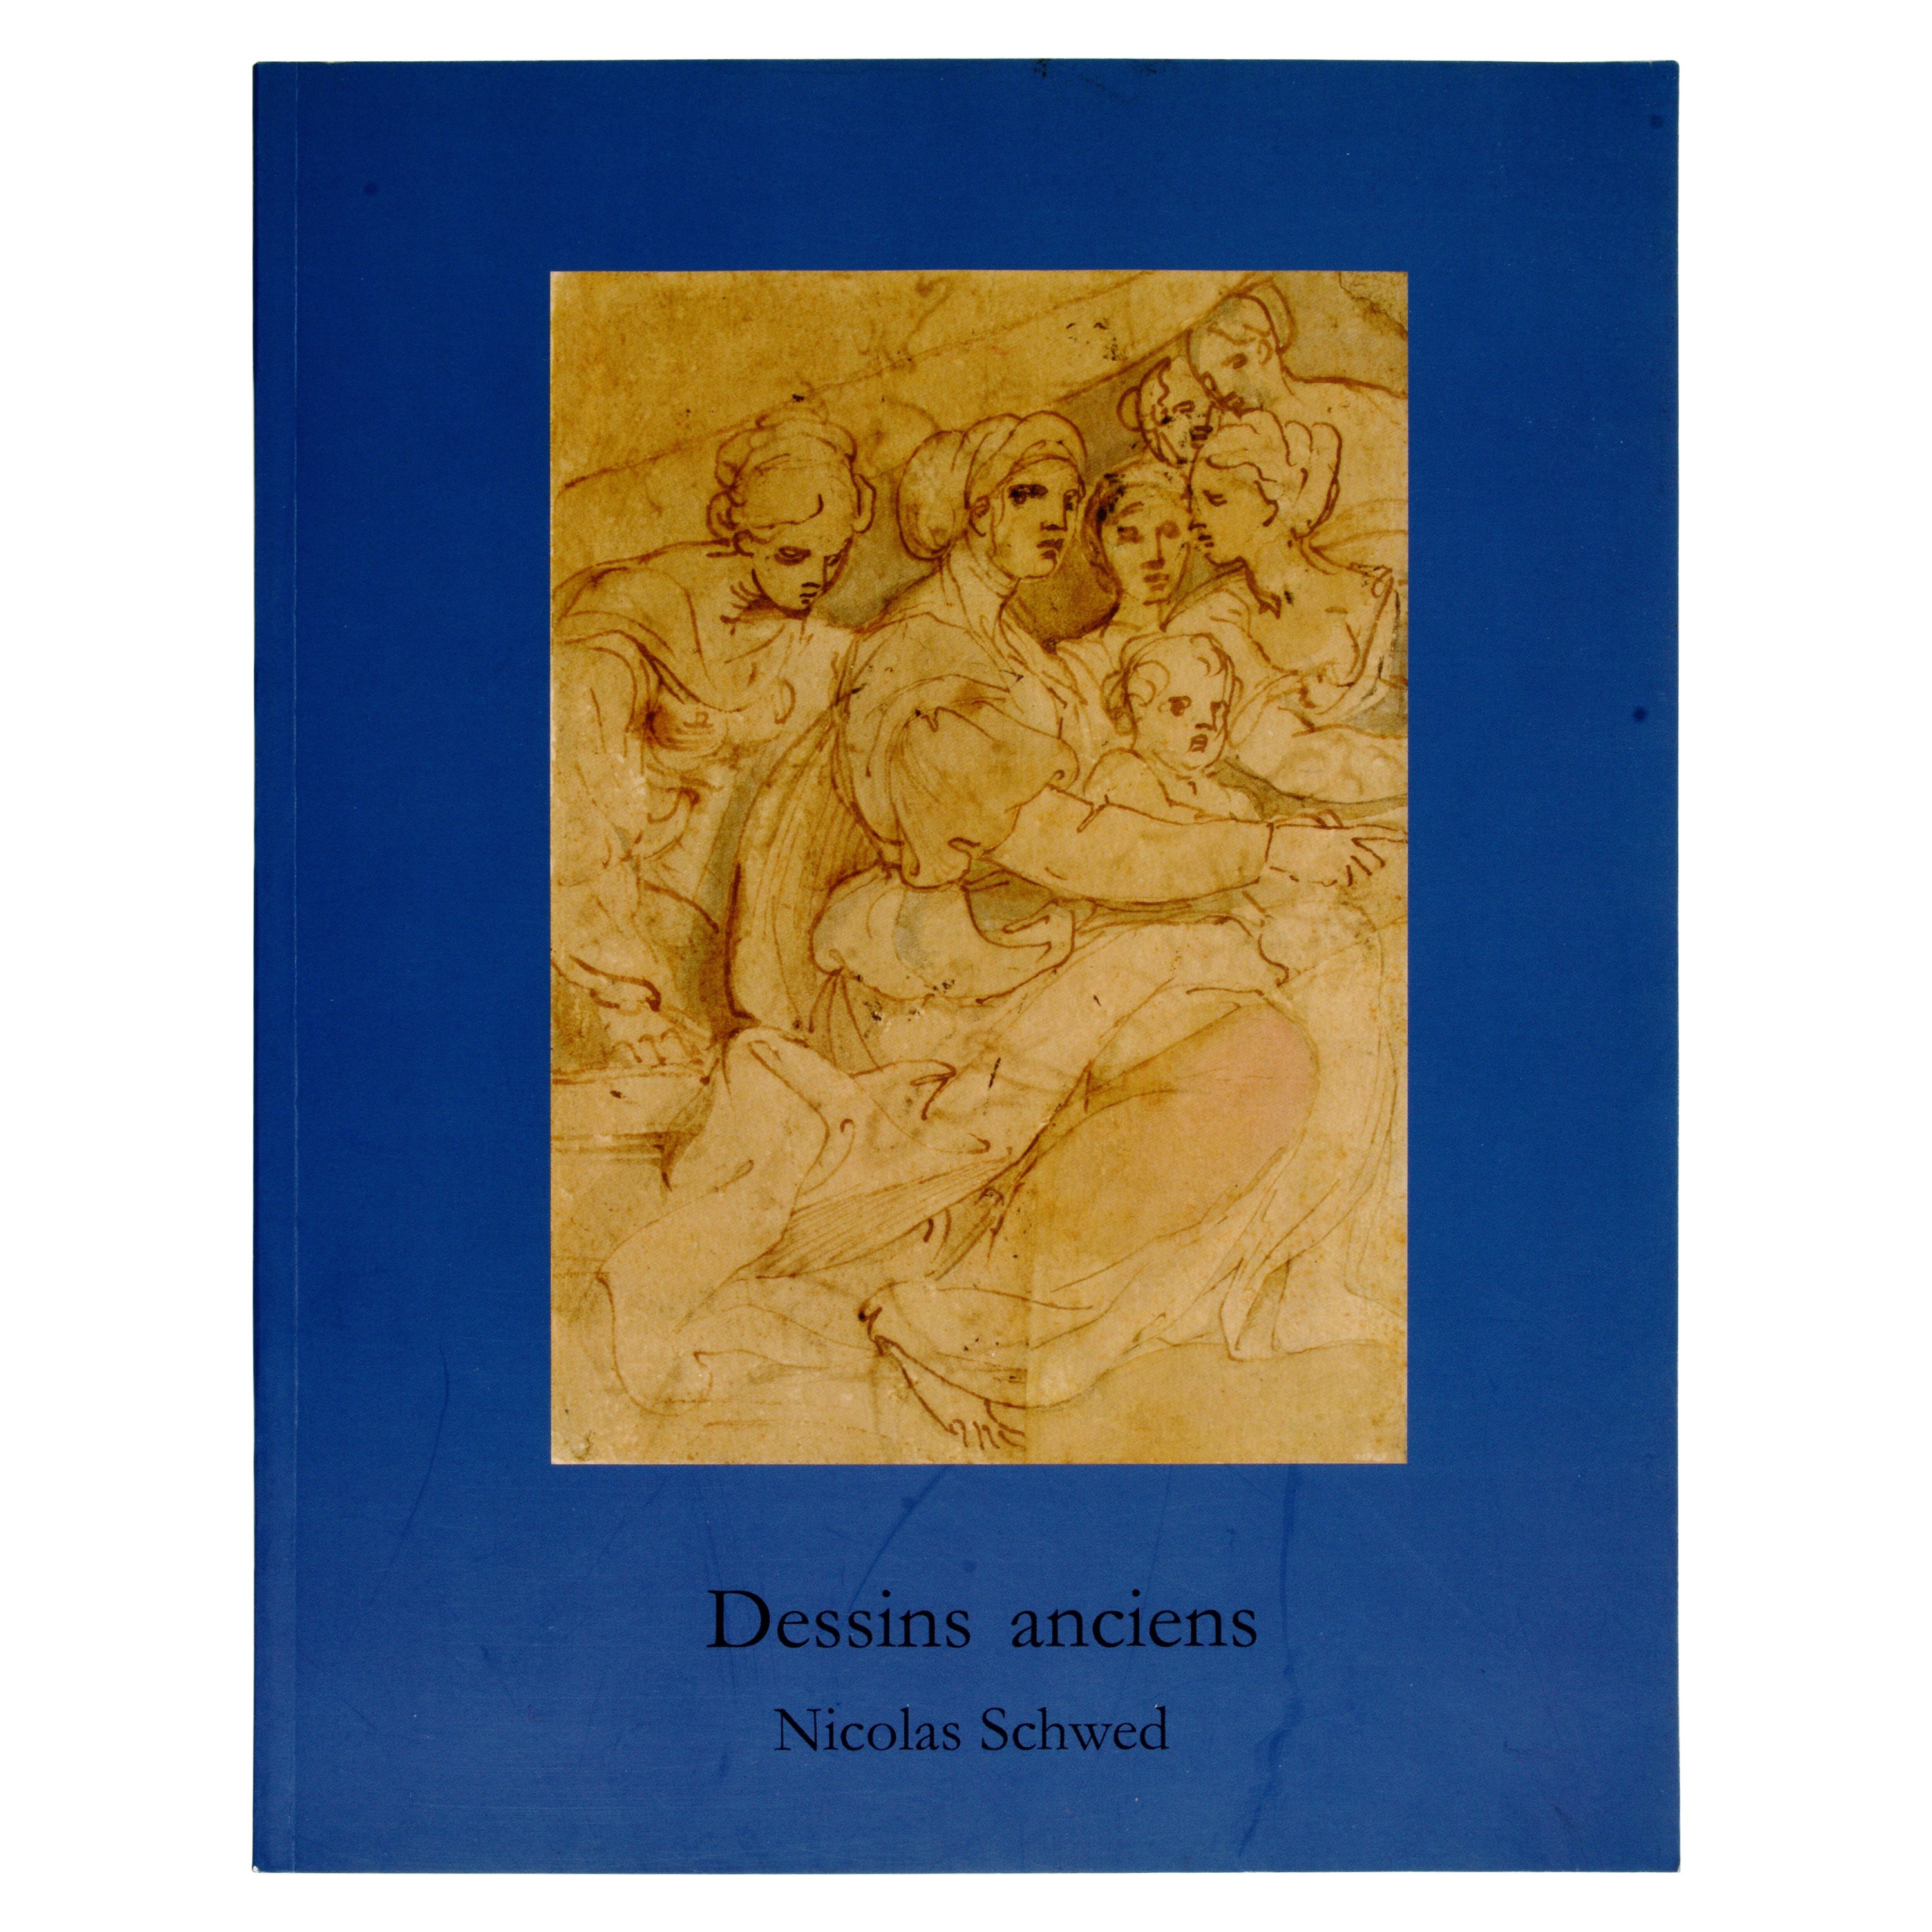 Dessins Anciens von Nicolas Schwed, Mars 2014, 1. Ed.